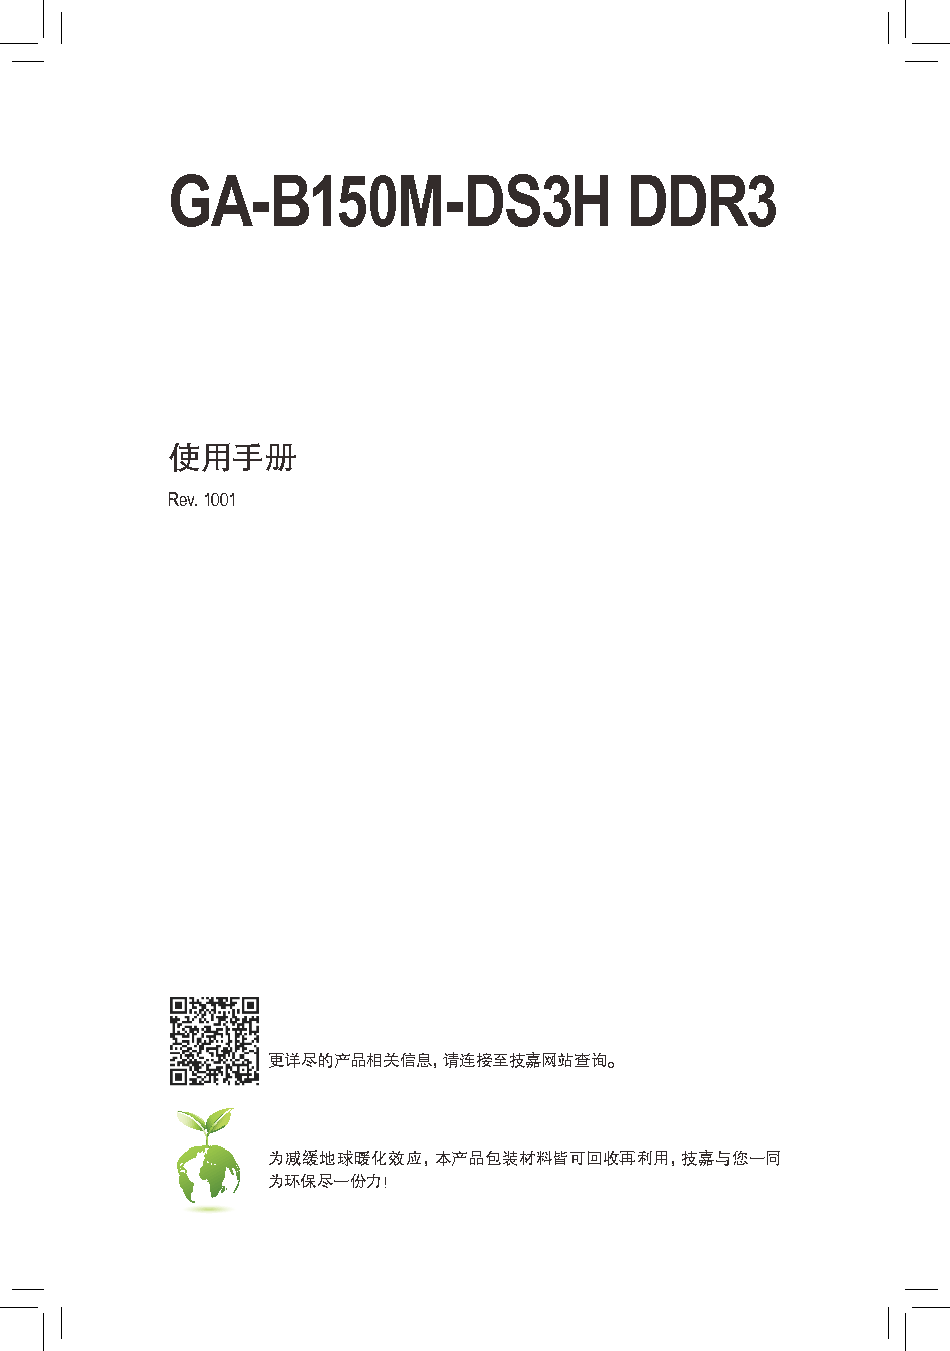 技嘉 Gigabyte GA-B150M-DS3H DDR3 使用手册 封面